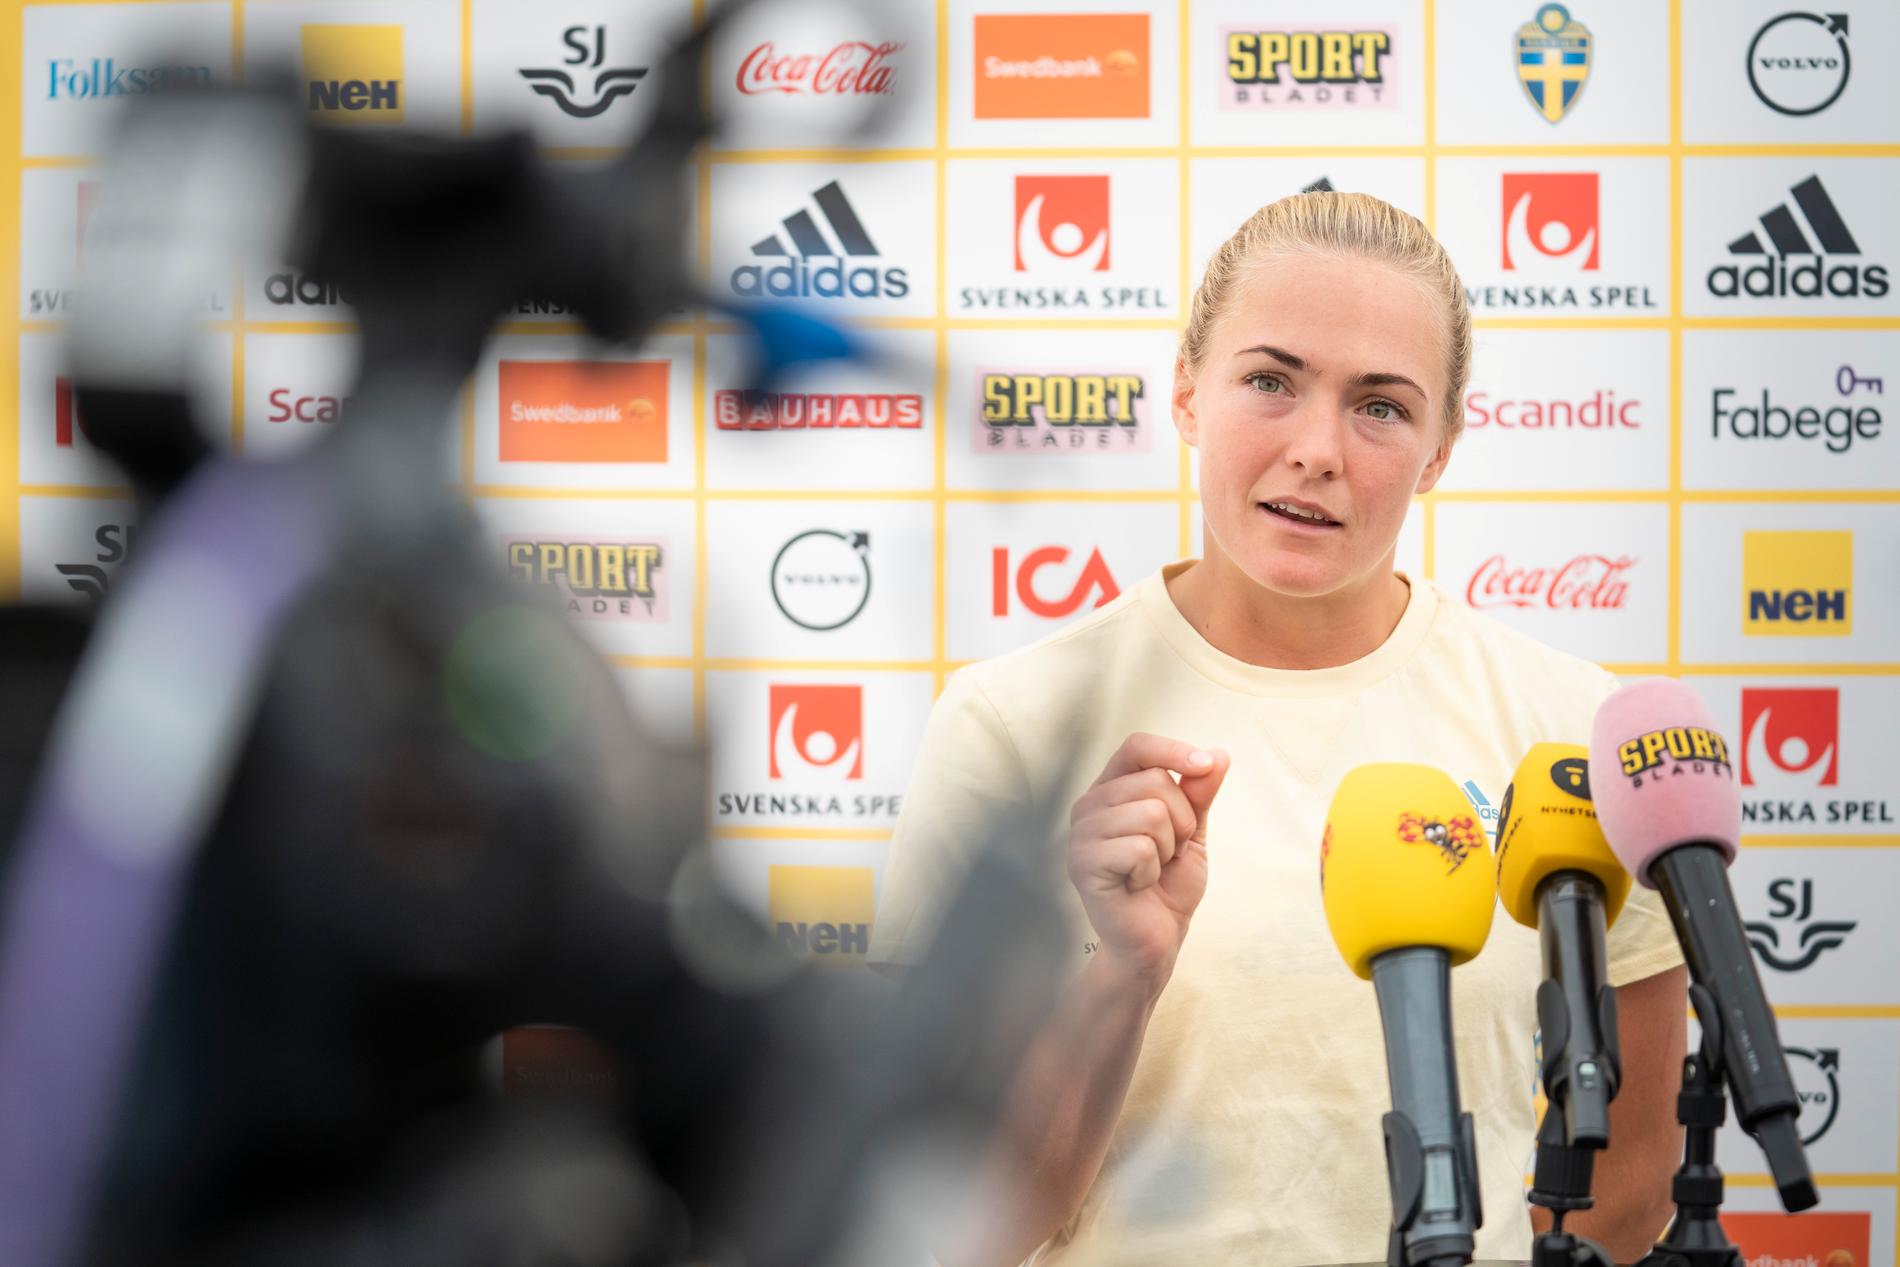 ”Martin är en helt fantastisk fotbollstränare”, säger Magdalena Eriksson.